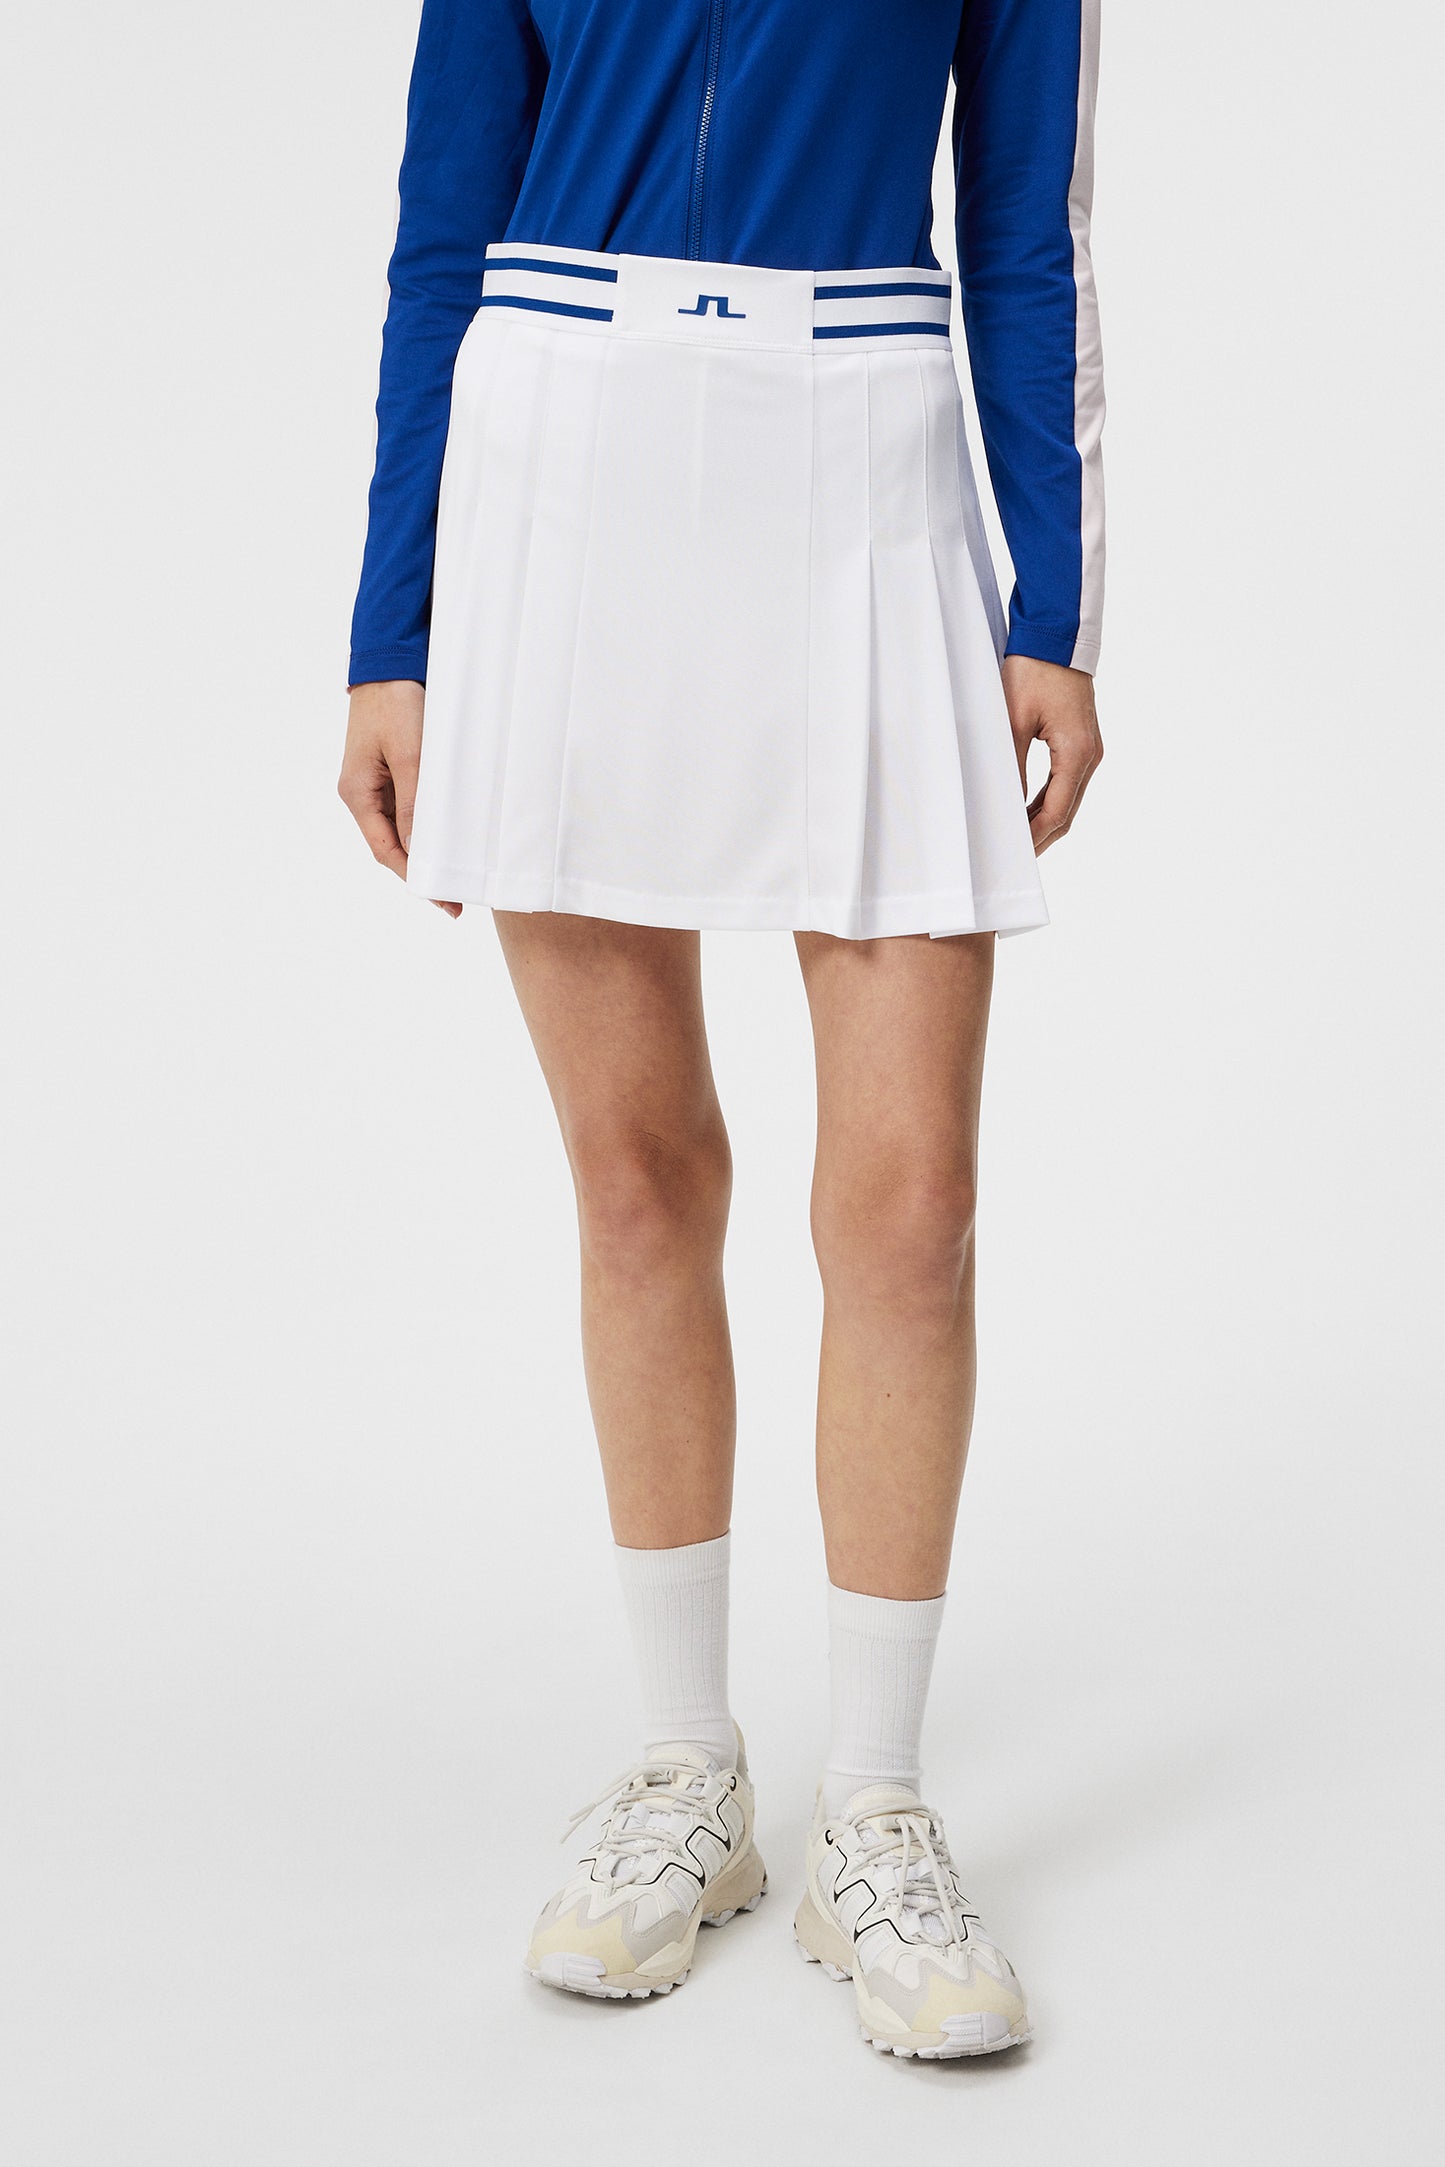 Harlow Skirt / White